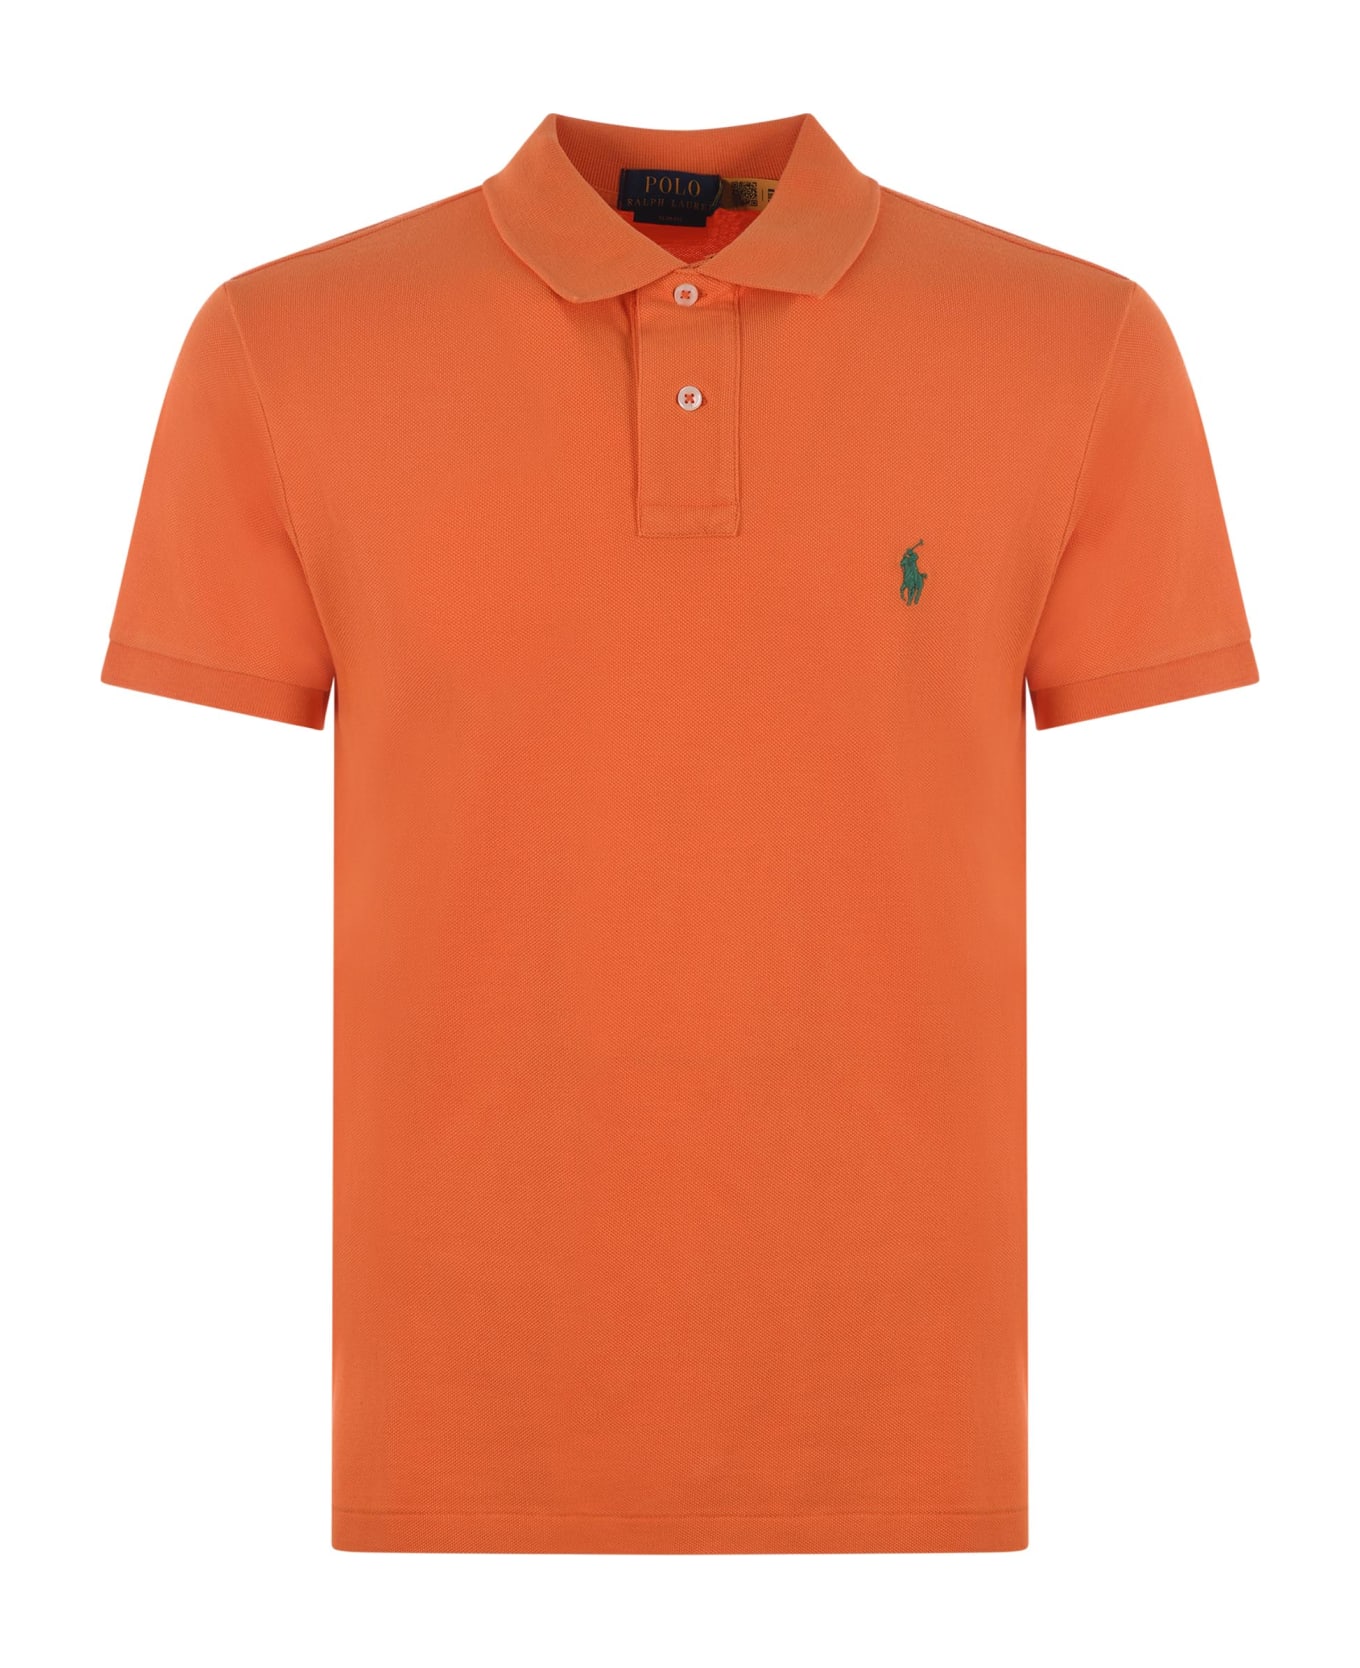 Polo Ralph Lauren "polo Ralph Lauren" Polo Shirt - Arancio